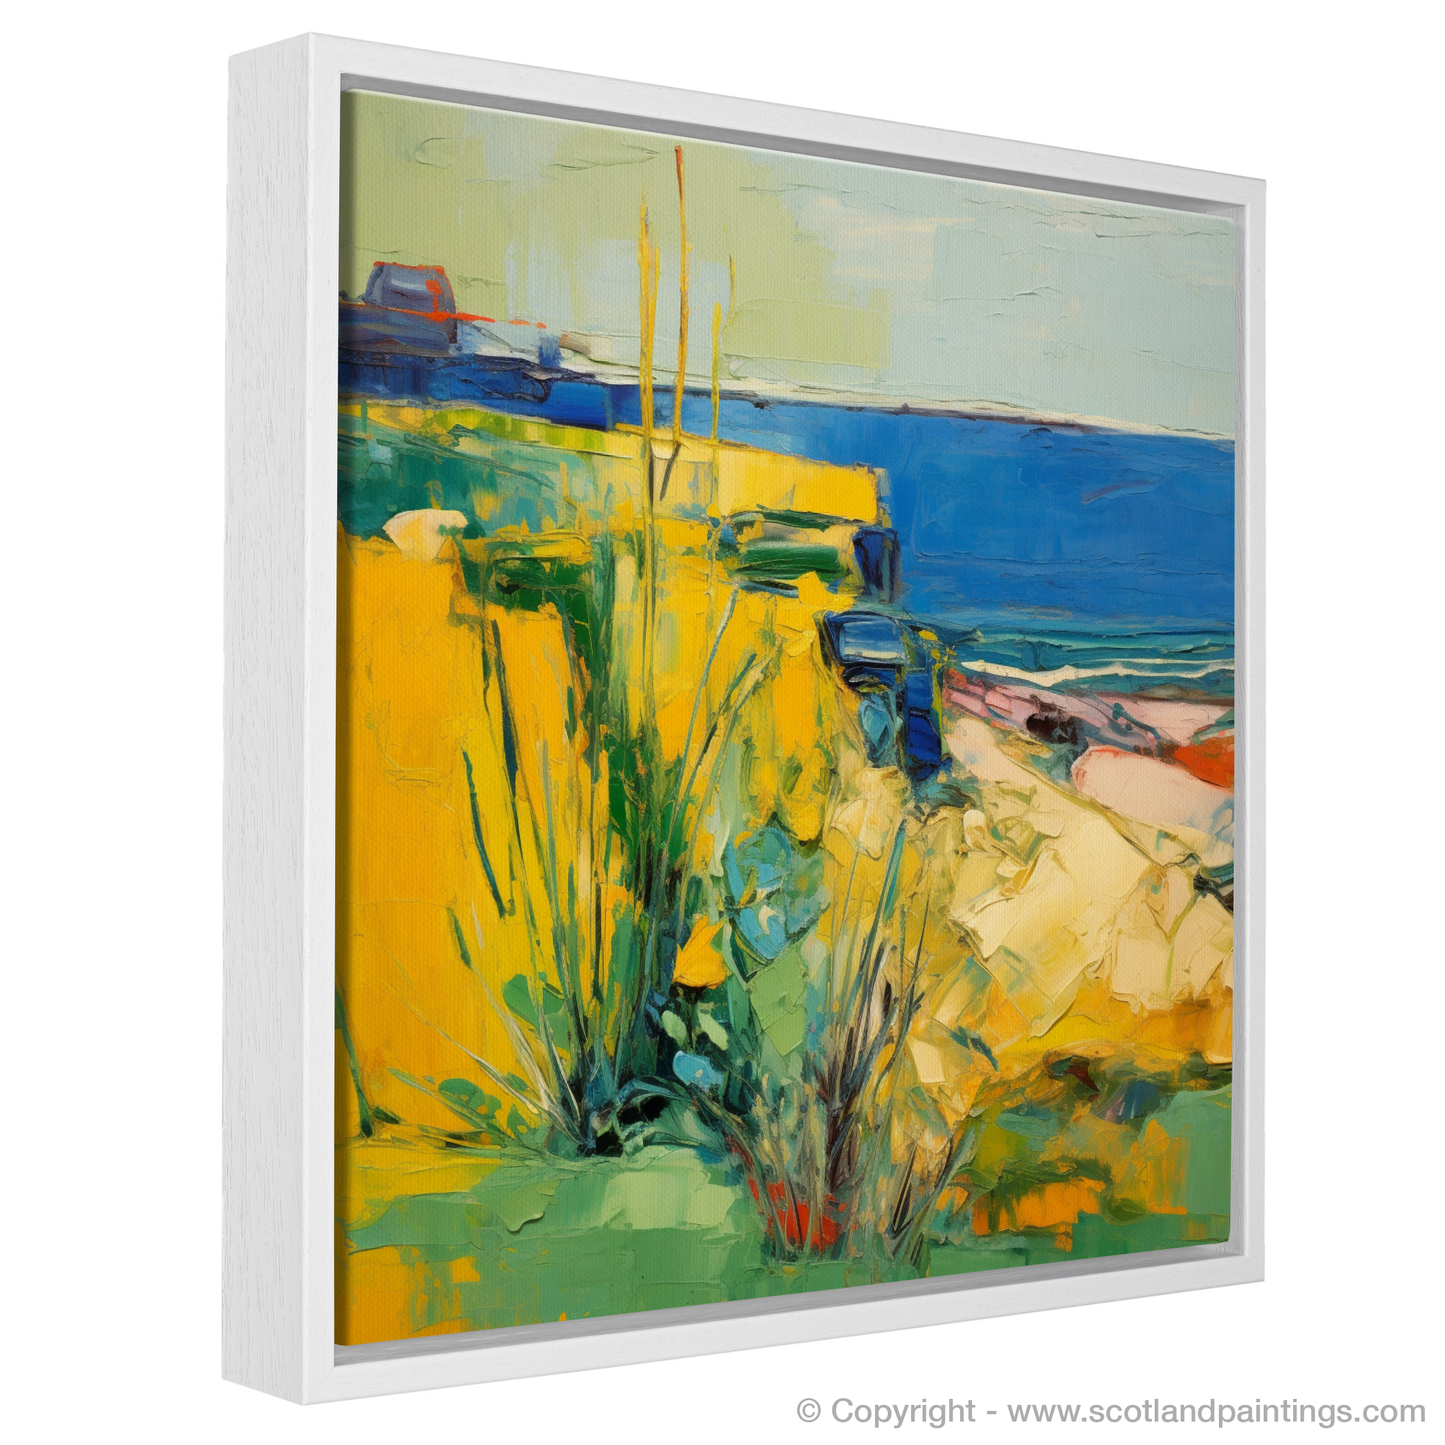 Golden Samphire of Berwick Cliffs: An Abstract Expressionist Ode